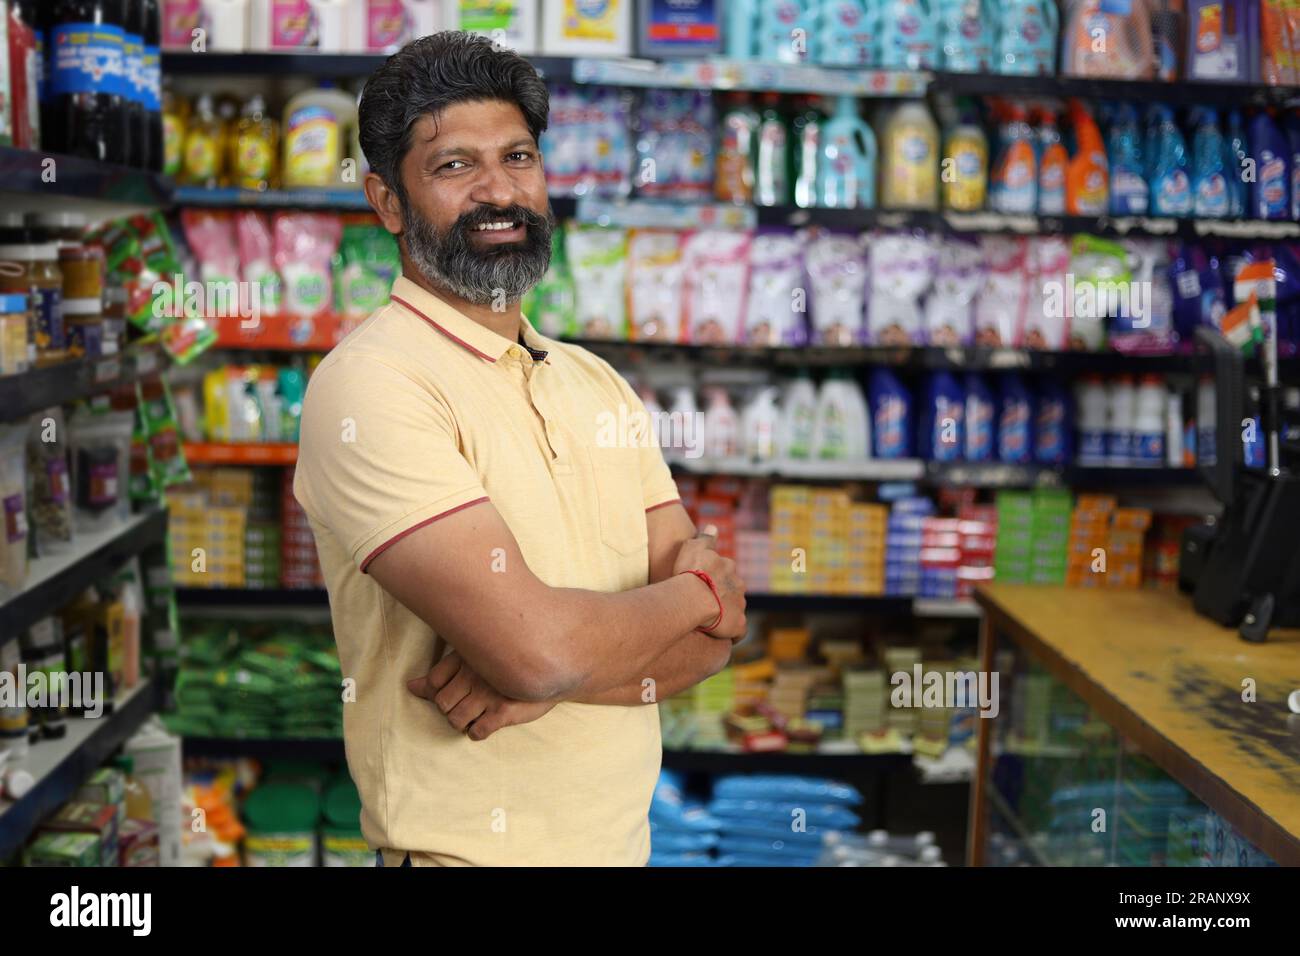 Bellissimo ritratto di un uomo barbuto bello e sorridente che fa shopping e posa nell'ipermercato. Mini centro commerciale locale sorrisi felici di clienti soddisfatti. Foto Stock